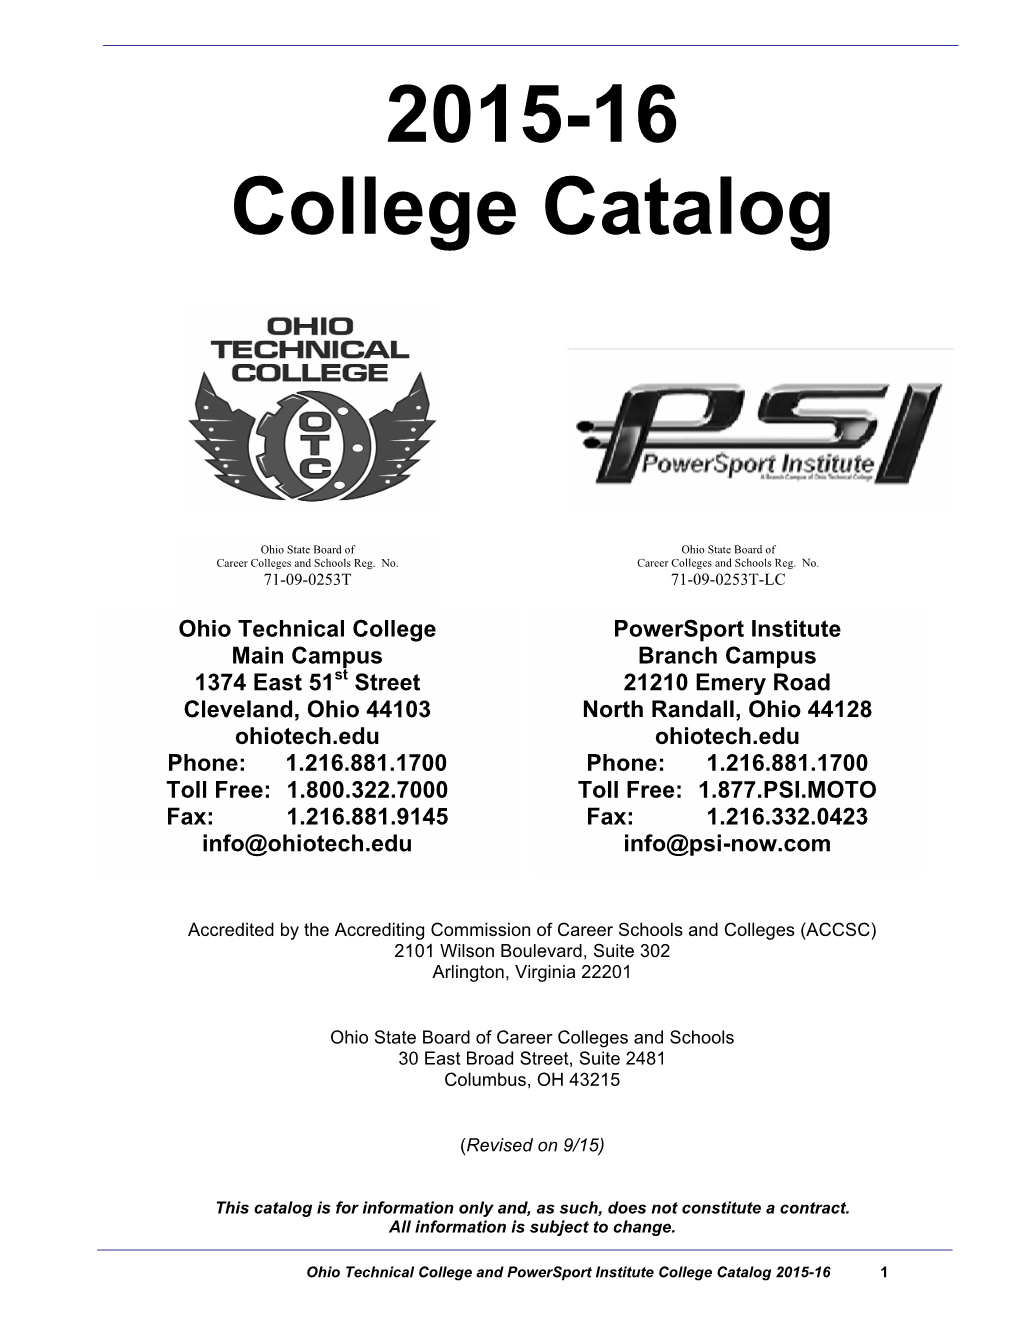 2015-16 College Catalog